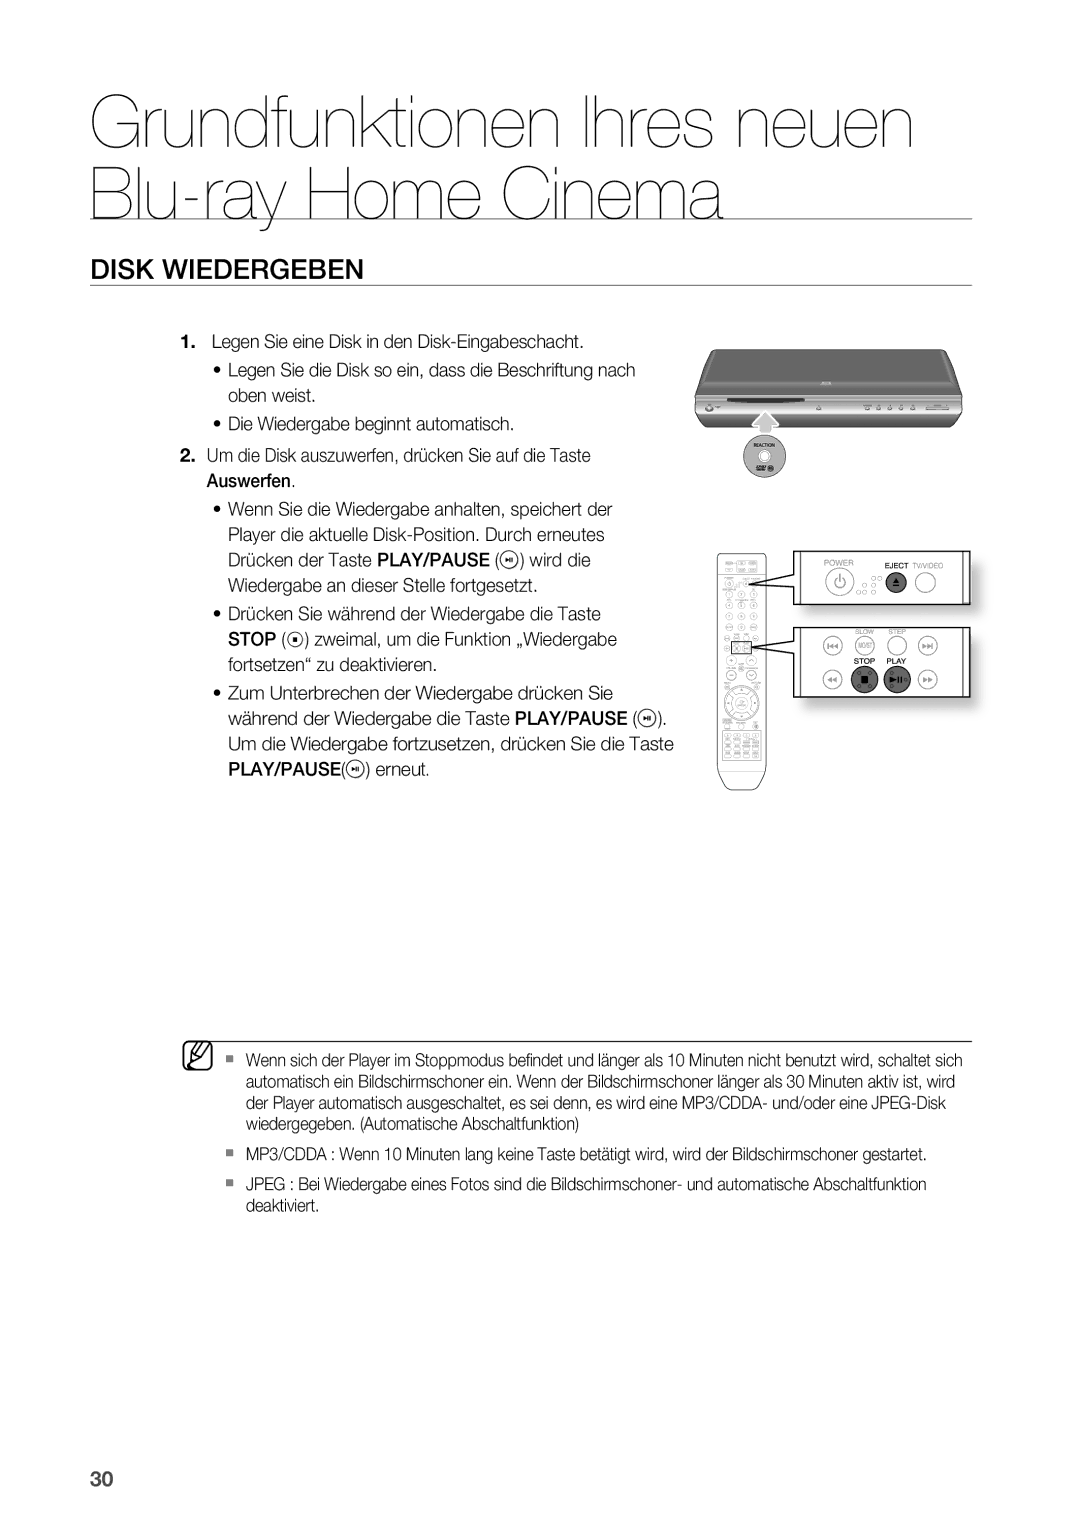 Samsung HT-BD2R/XEF manual Disk Wiedergeben 